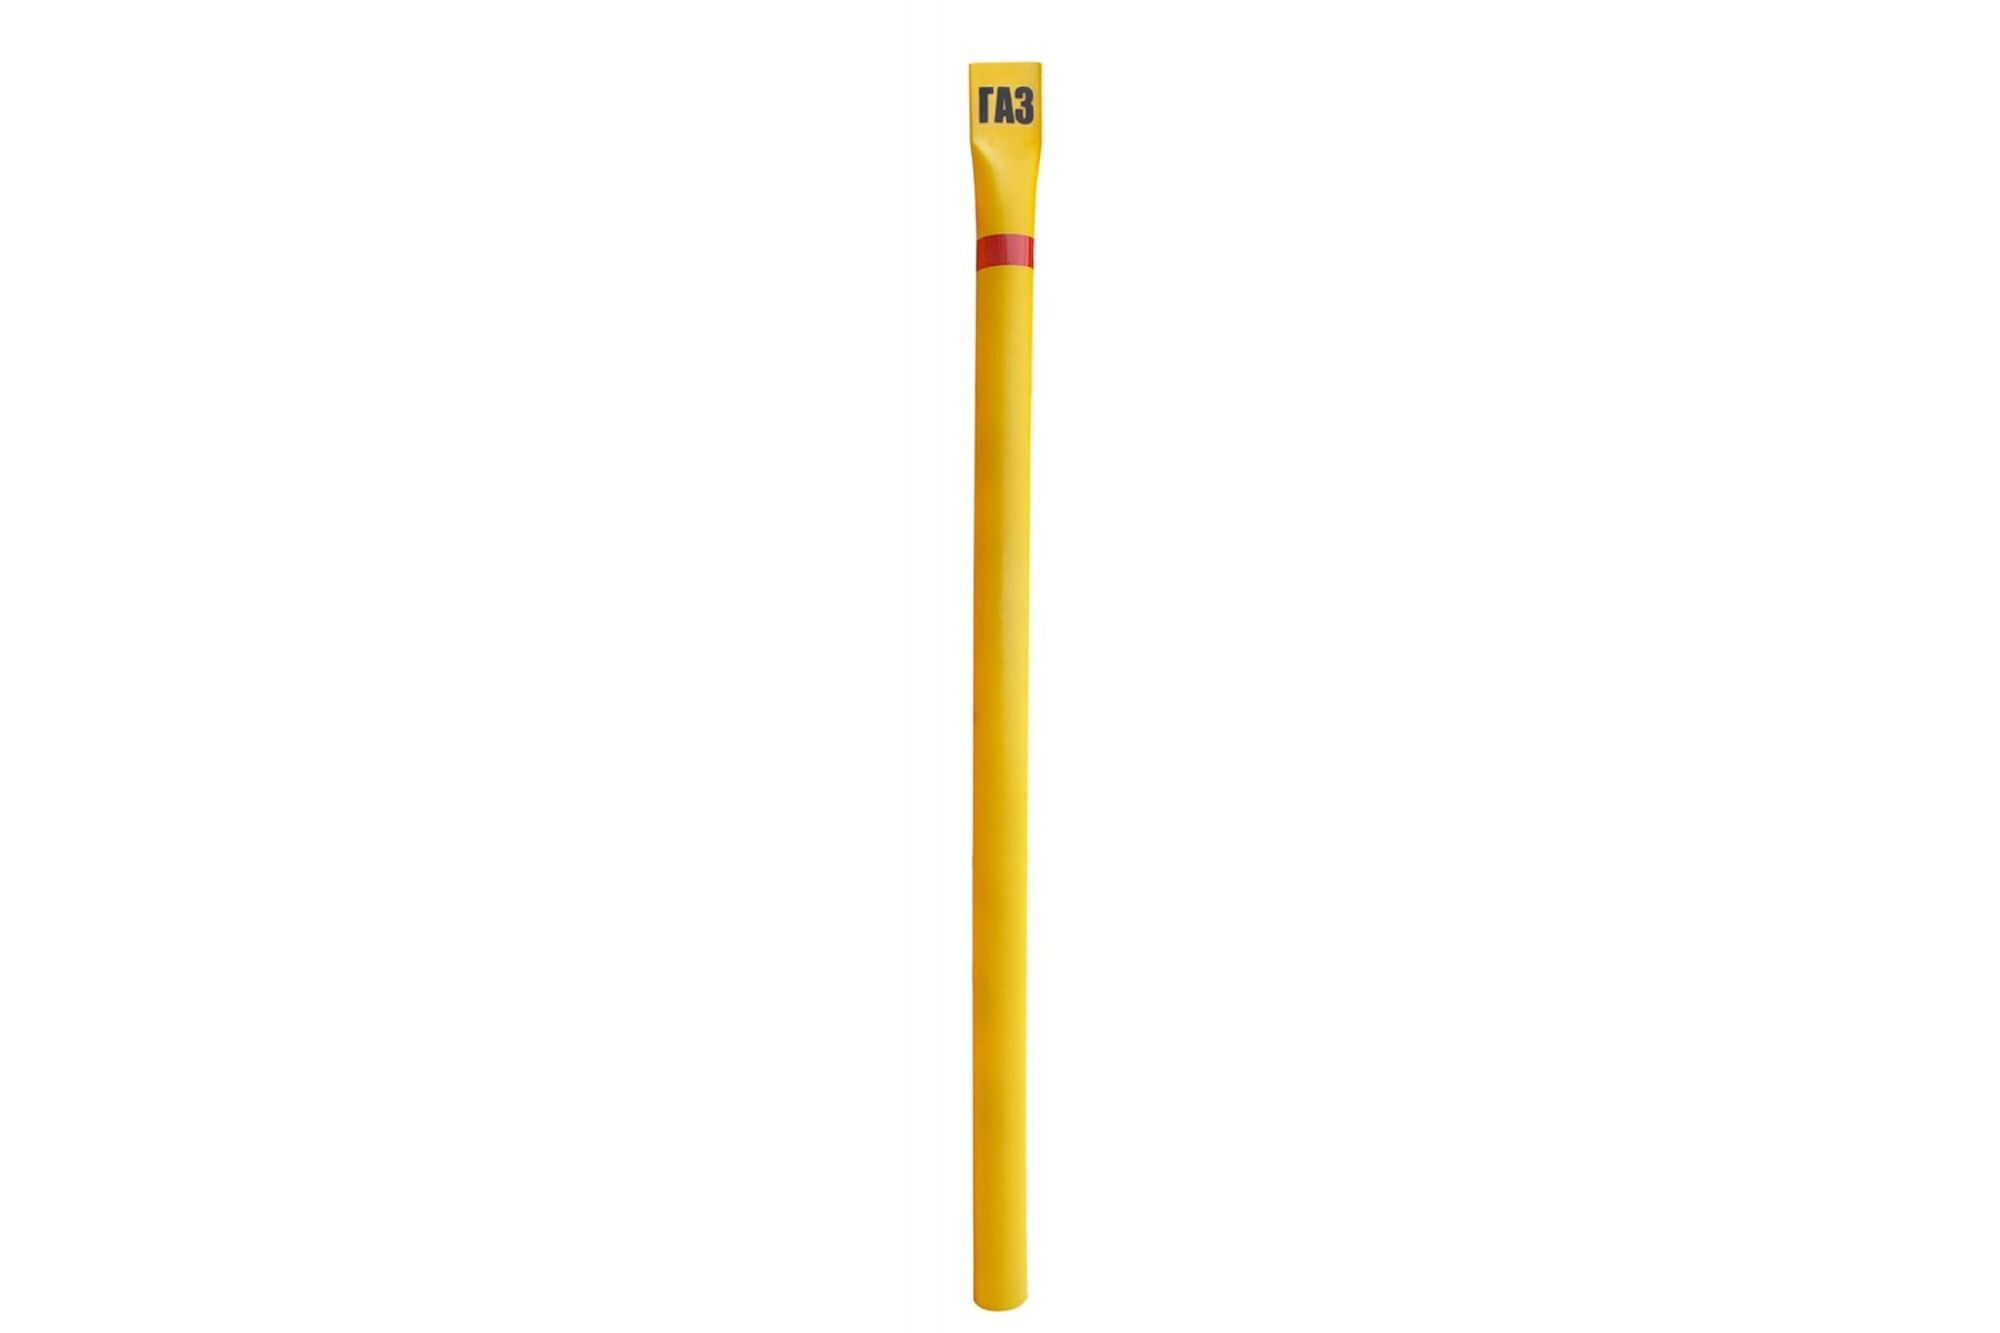 Опознавательный столбик ГАЗ диаметр 108 мм, желтый Протэкт СОГ-2,5